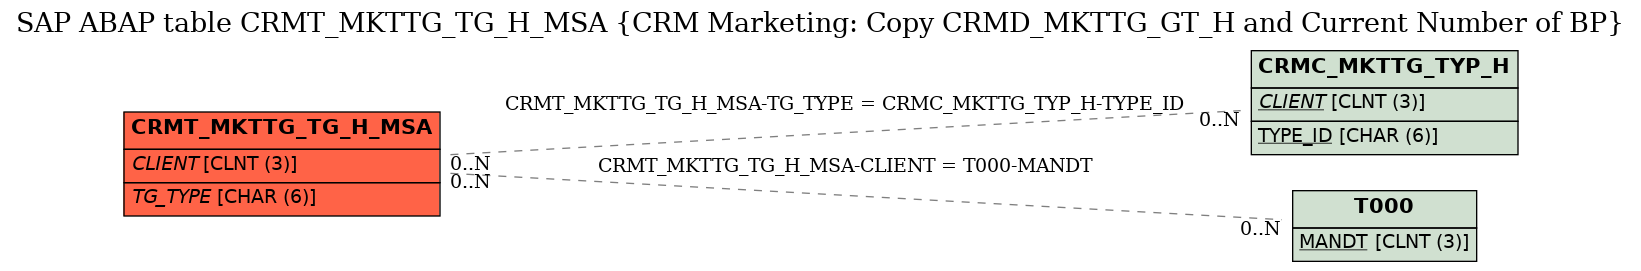 E-R Diagram for table CRMT_MKTTG_TG_H_MSA (CRM Marketing: Copy CRMD_MKTTG_GT_H and Current Number of BP)